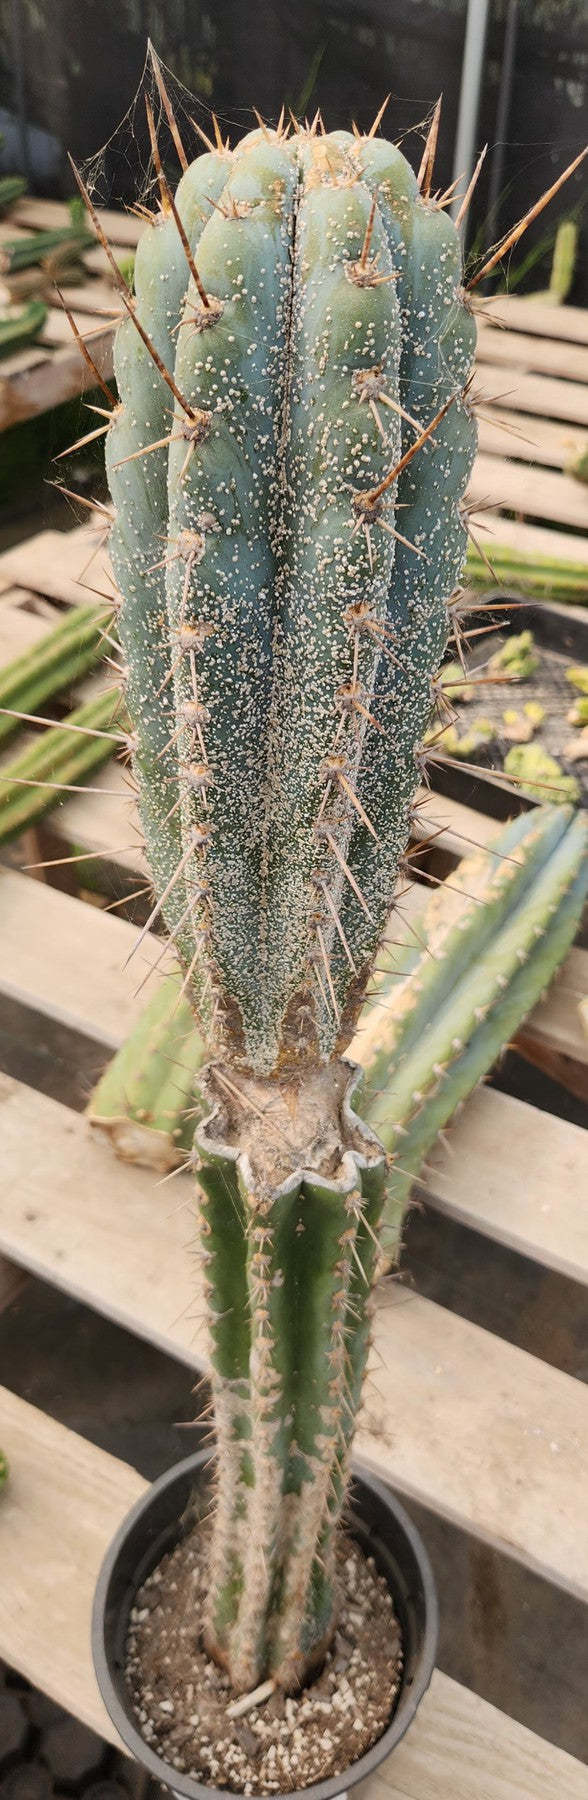 #EC256 EXACT Trichocereus Peruvianus TLC Ornamental Cactus Hospital Rescue-Cactus - Large - Exact-The Succulent Source